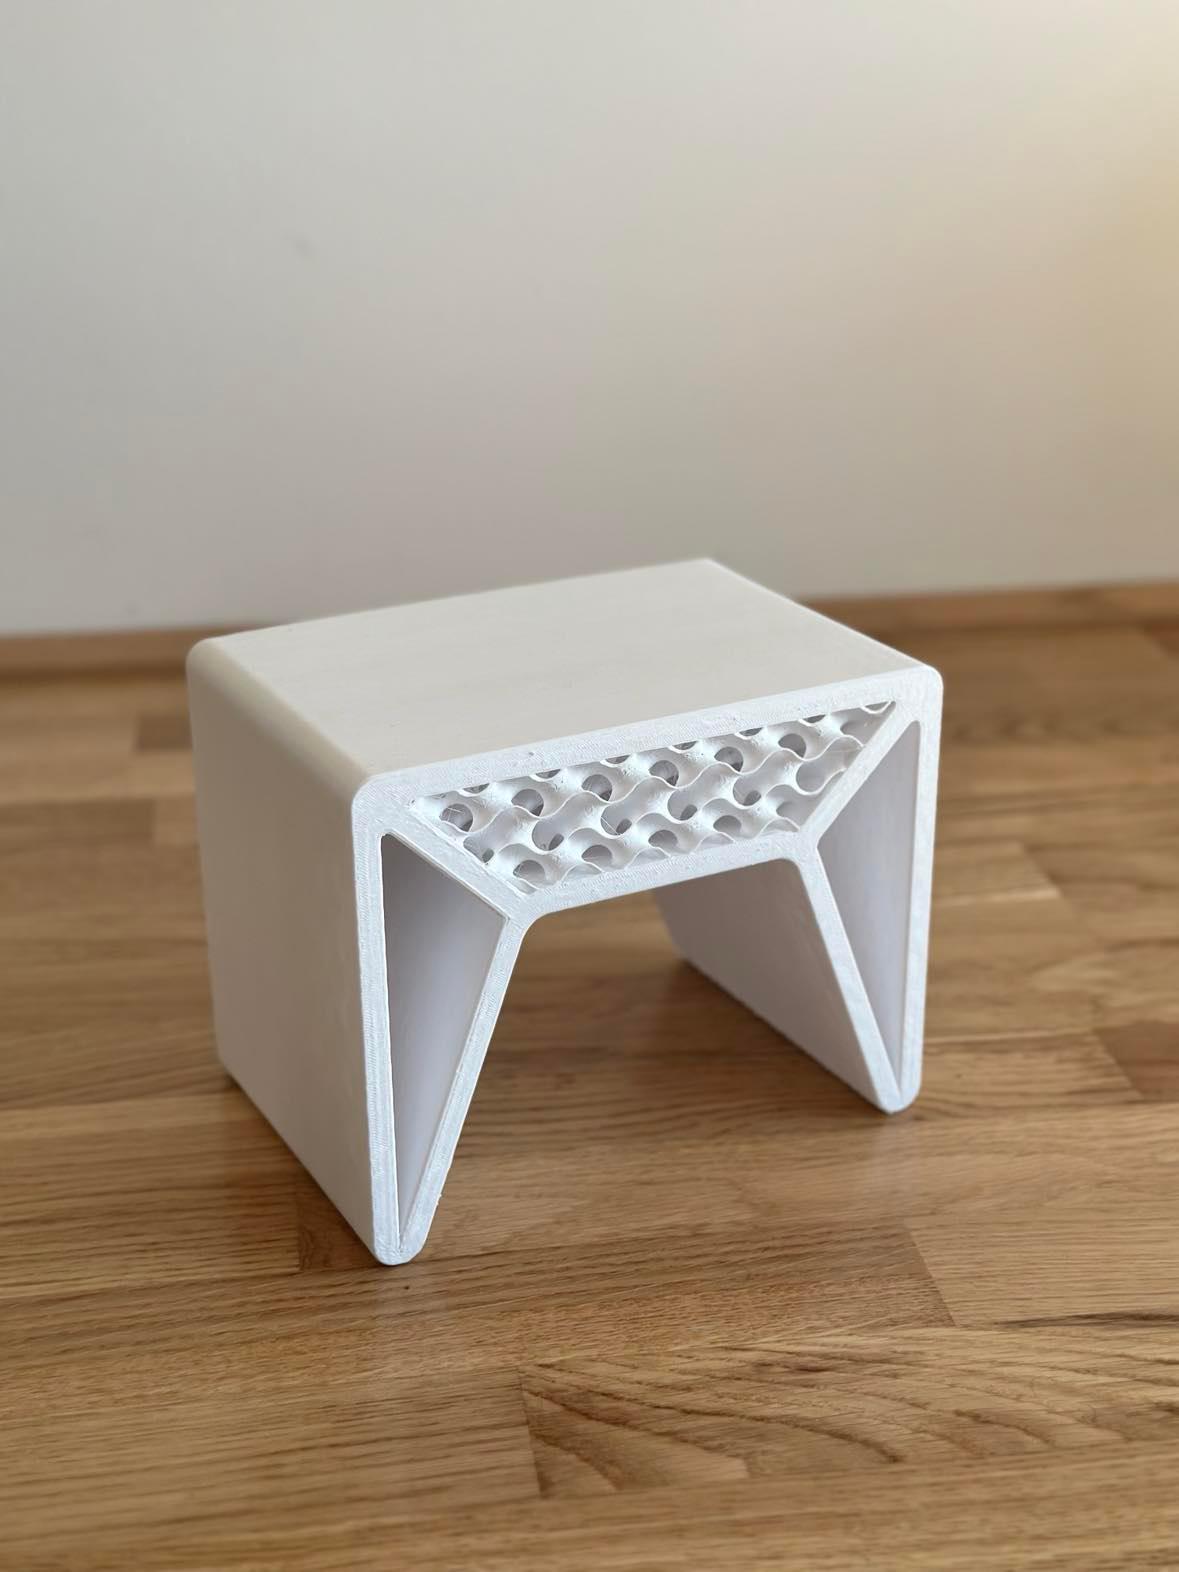 ZIDLICKA V2 Gyroid stool 3d model